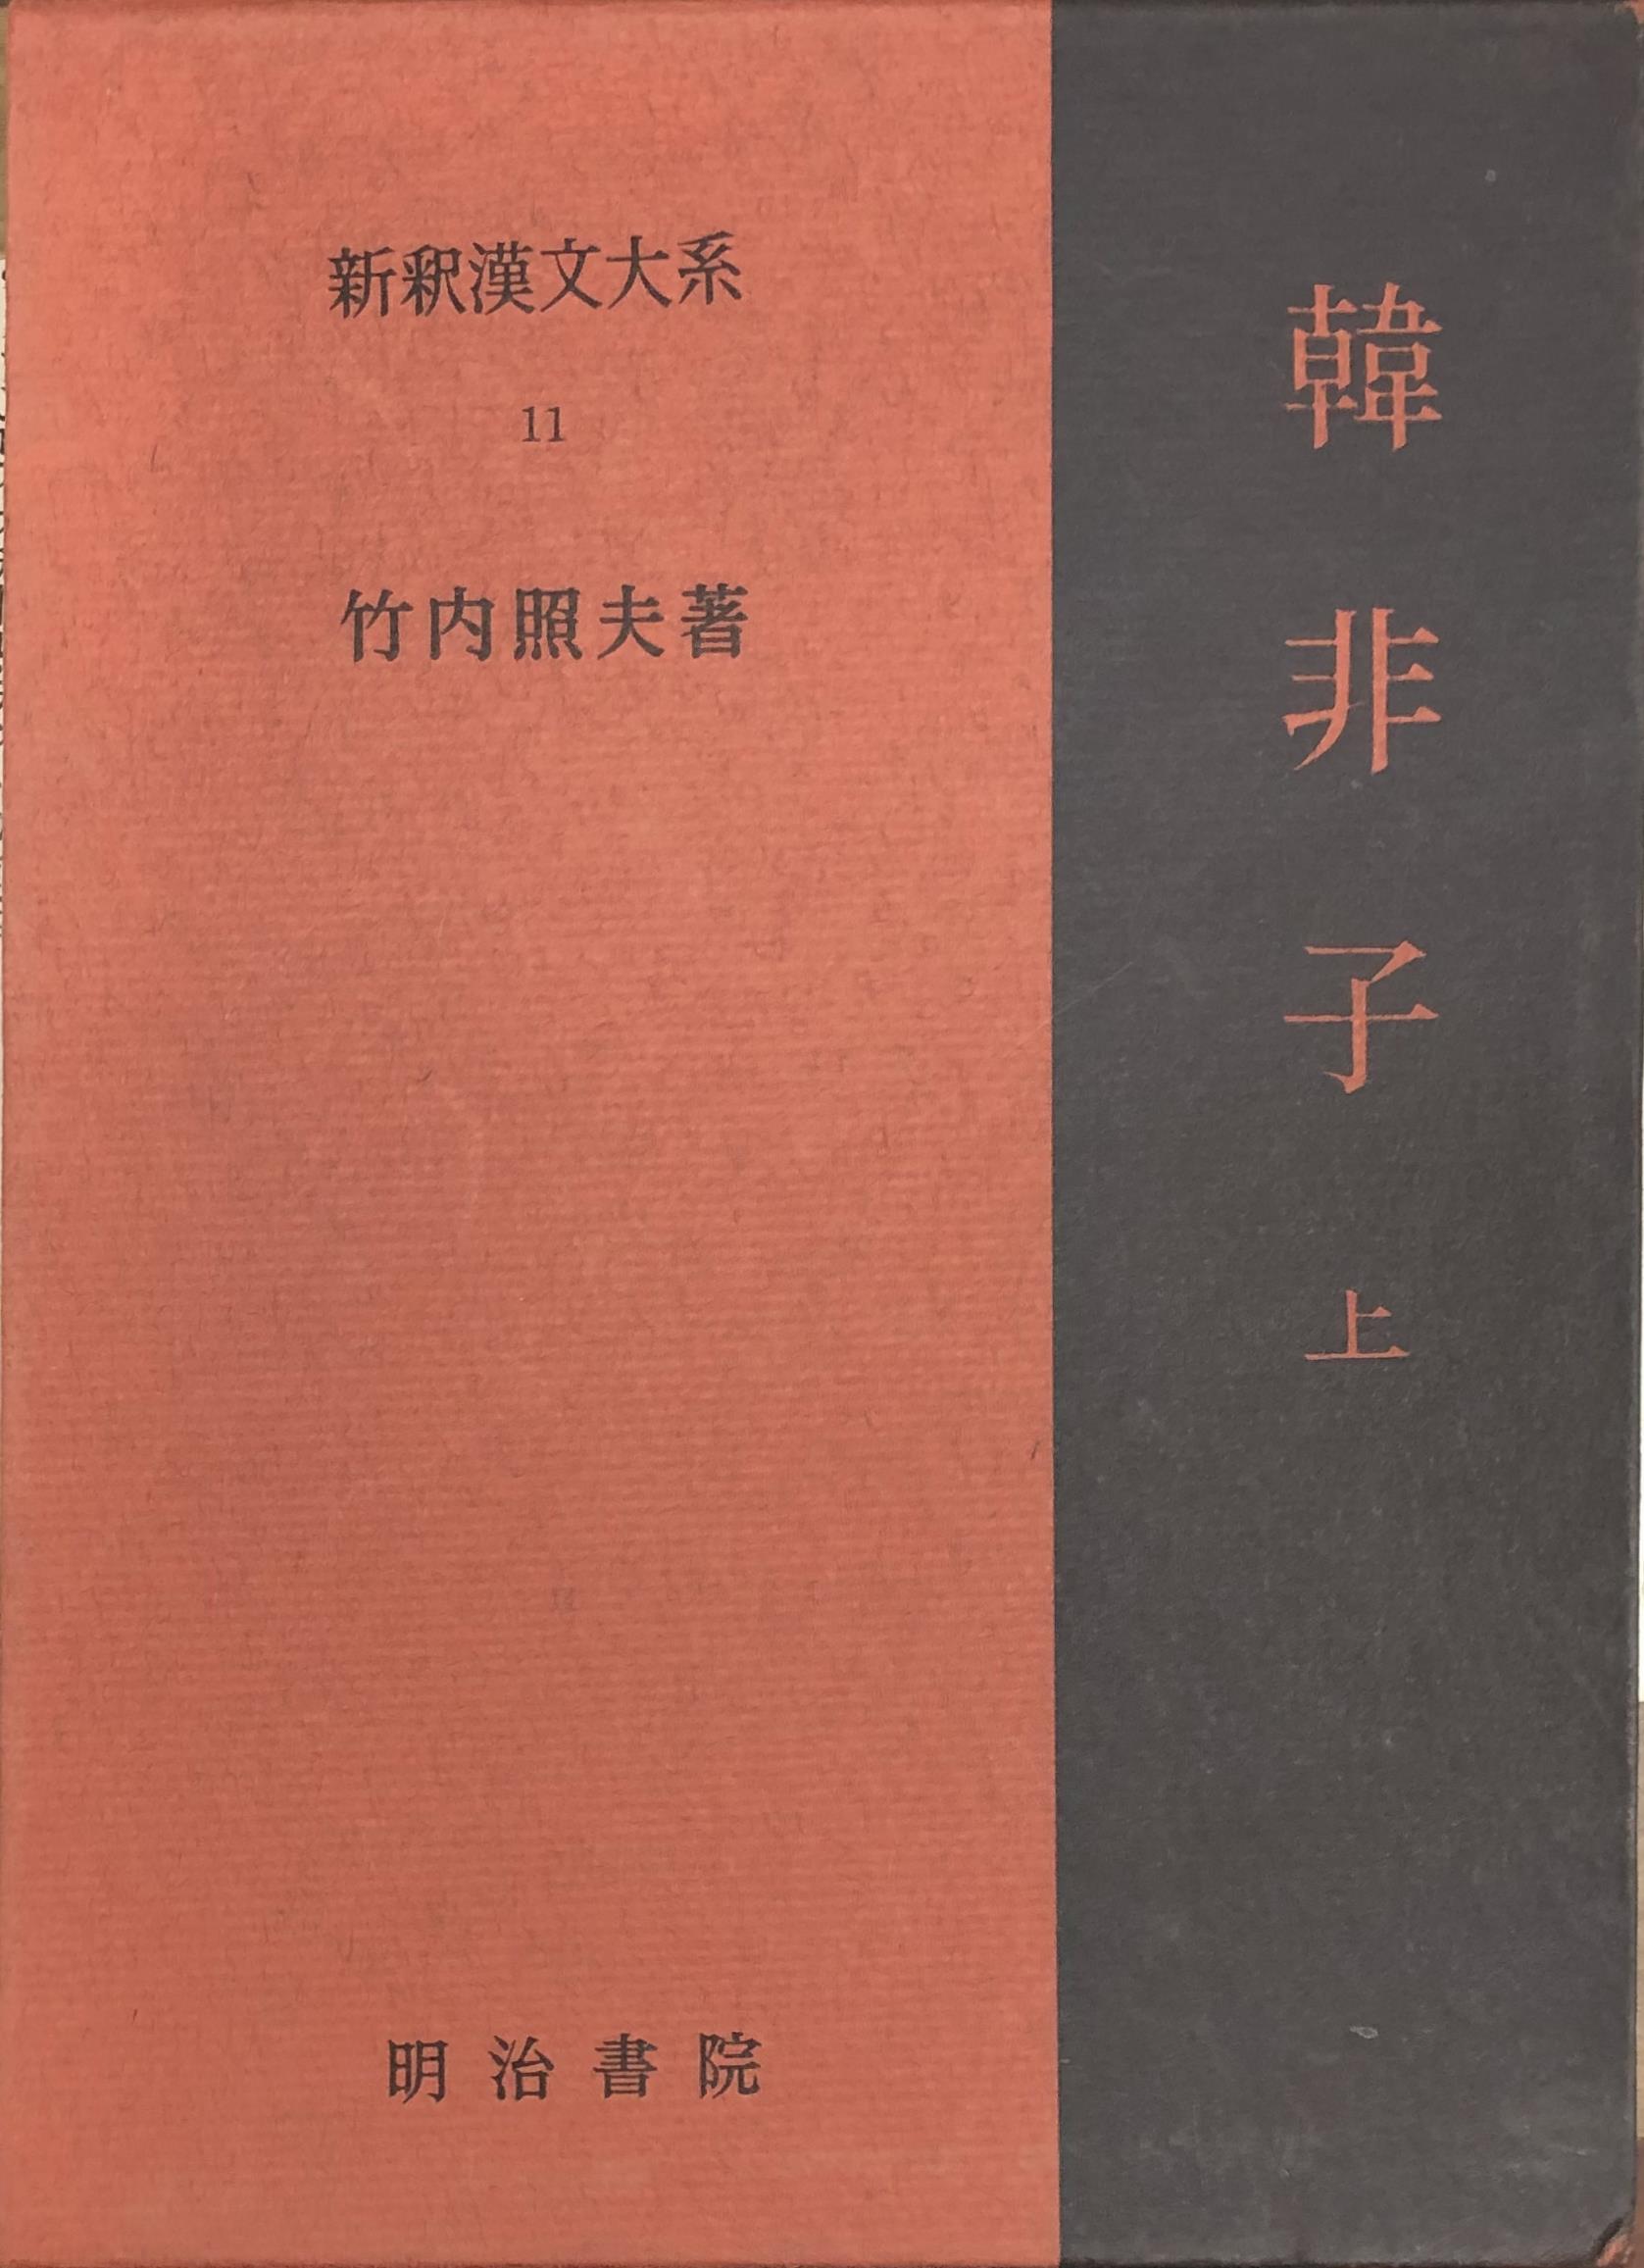 新釈漢文大系』『中国文化史大事典』ほか中国関係の古本を出張買取